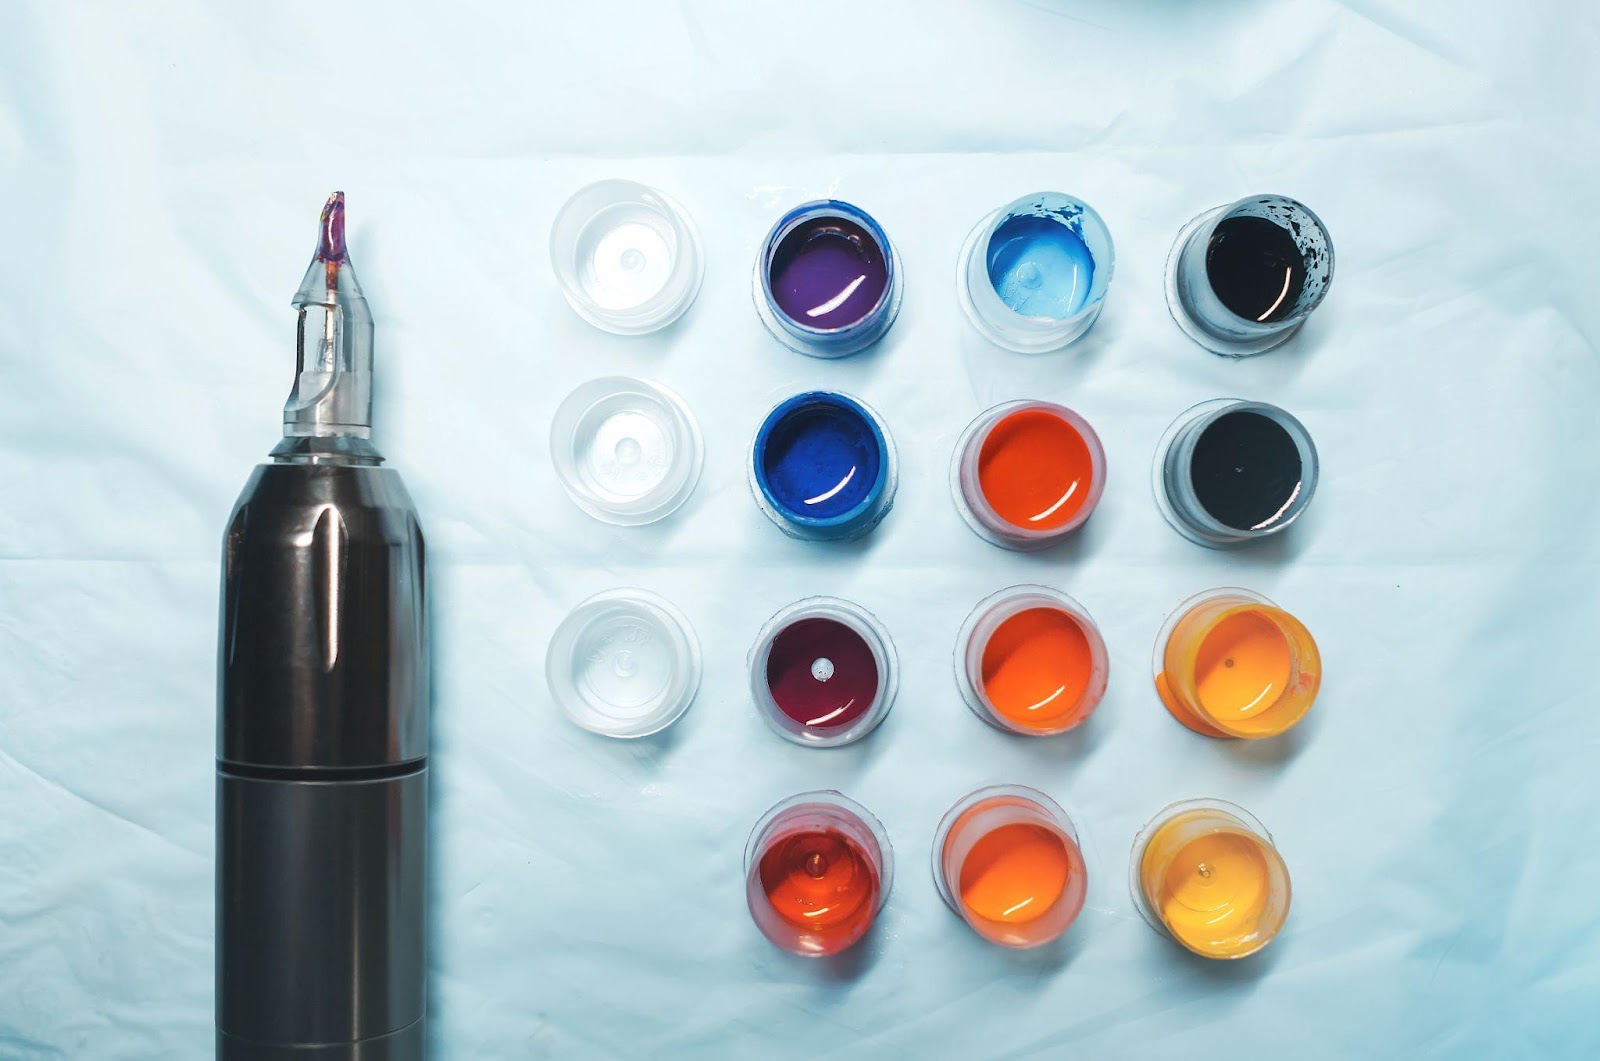 Los pigmentos que se usan en las tintas para tatuajes suelen ser idénticos a los que se usan para colorear pinturas, plásticos y textiles.